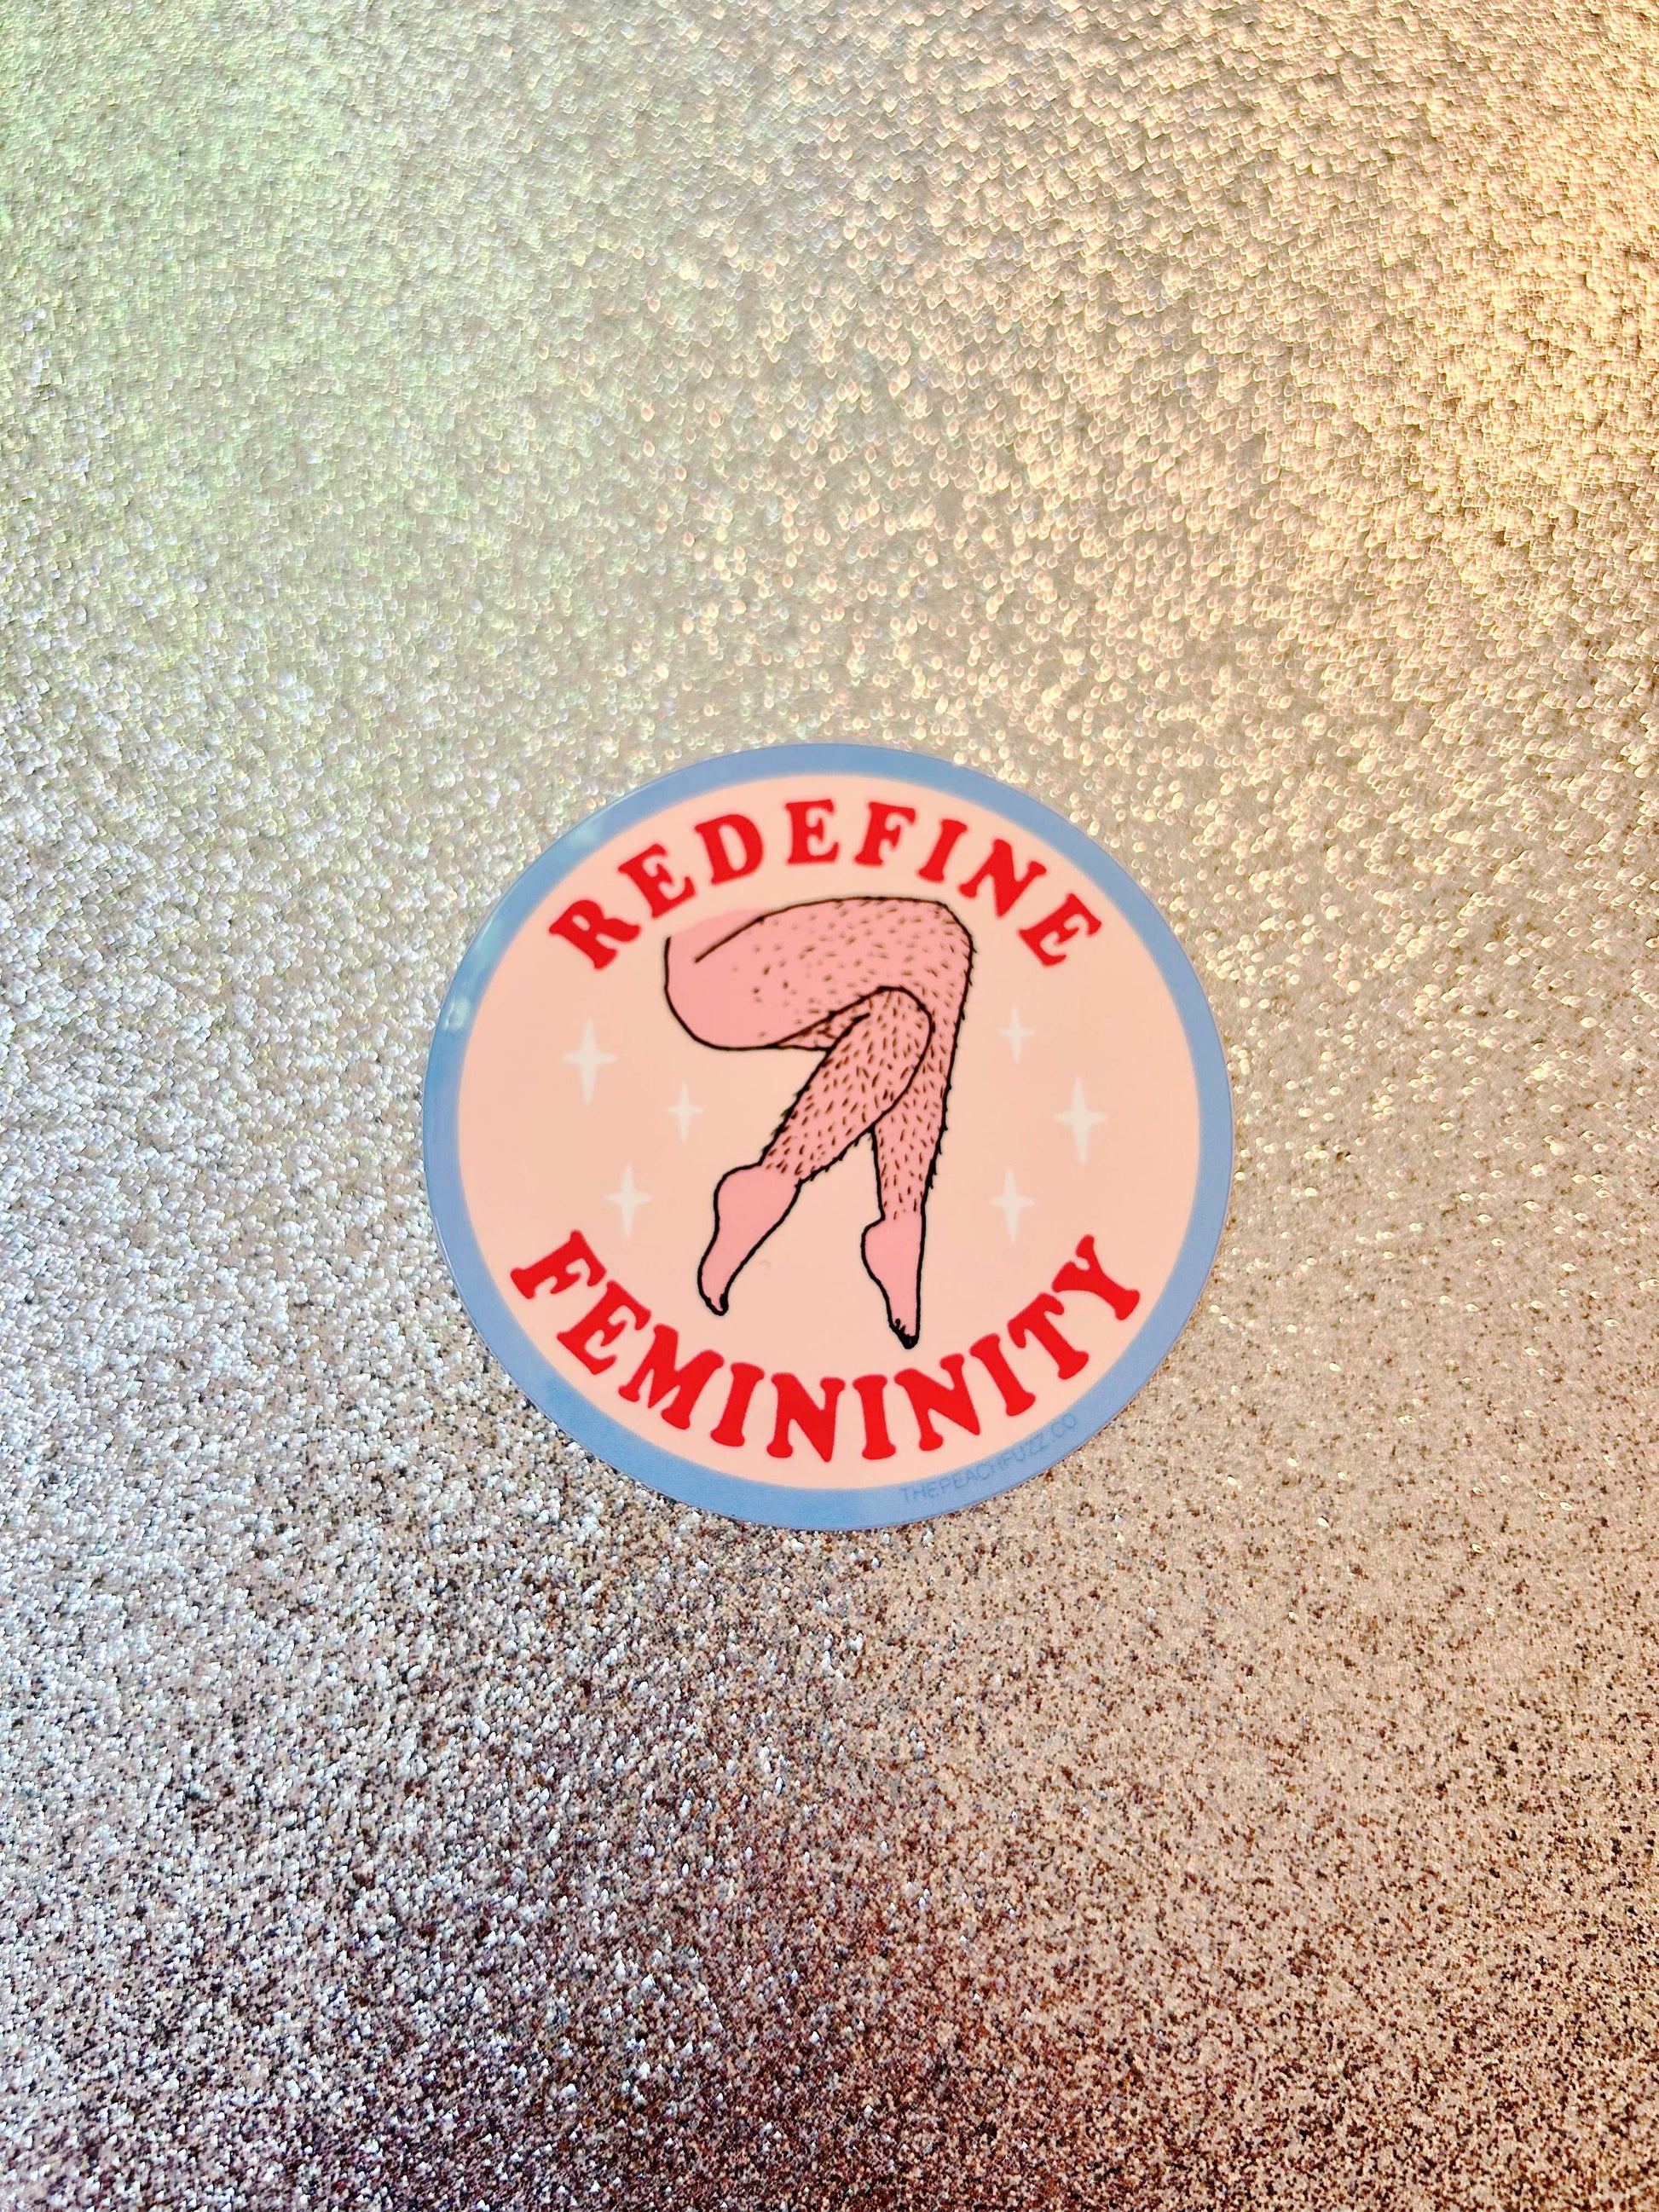 Redefine Femininity Sticker  The Peach Fuzz   